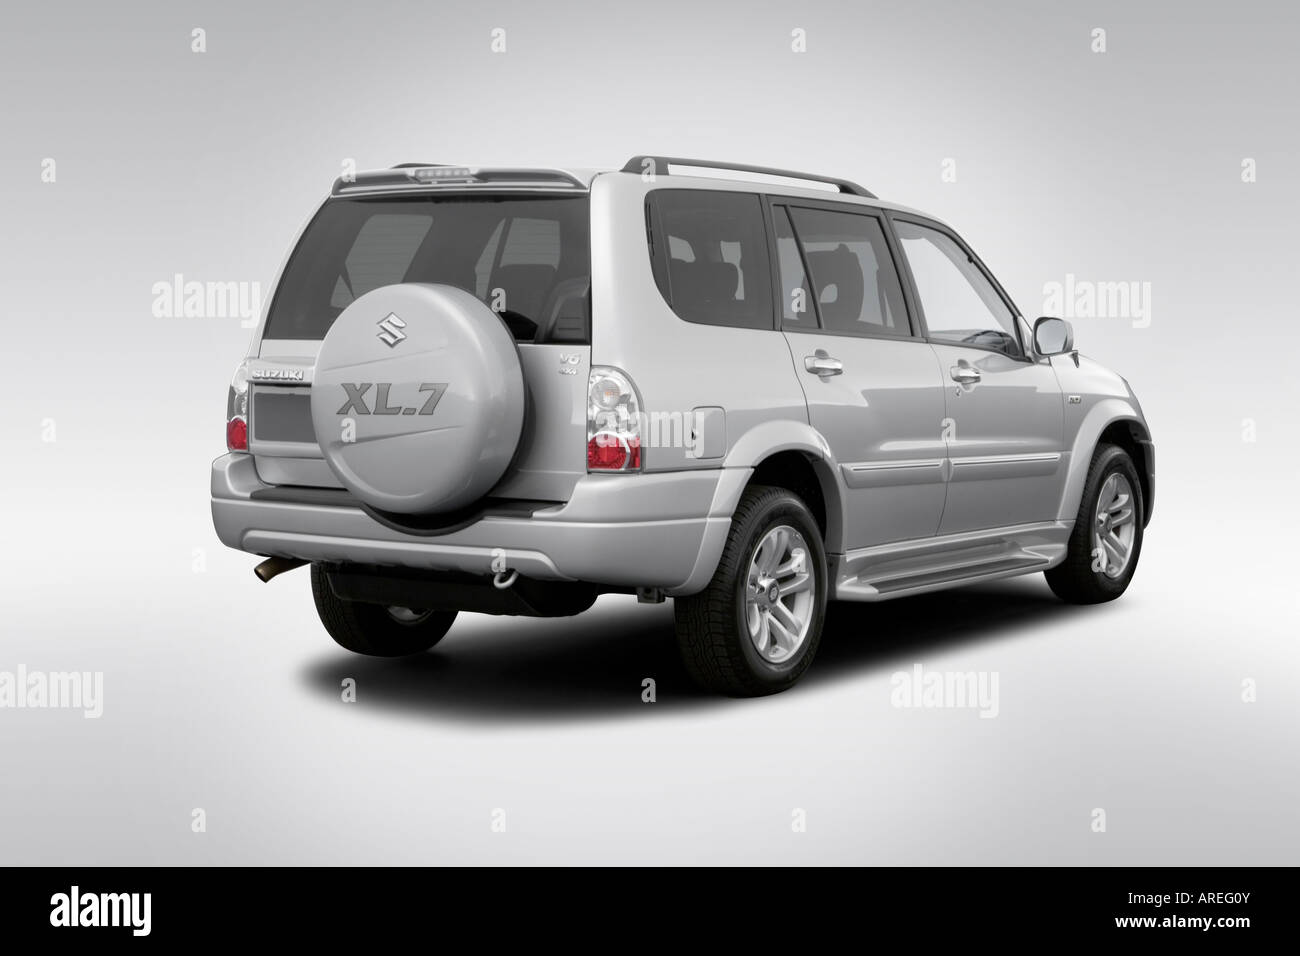 2006 Suzuki XL7 Premium in Silver - Rear angle view Stock Photo - Alamy